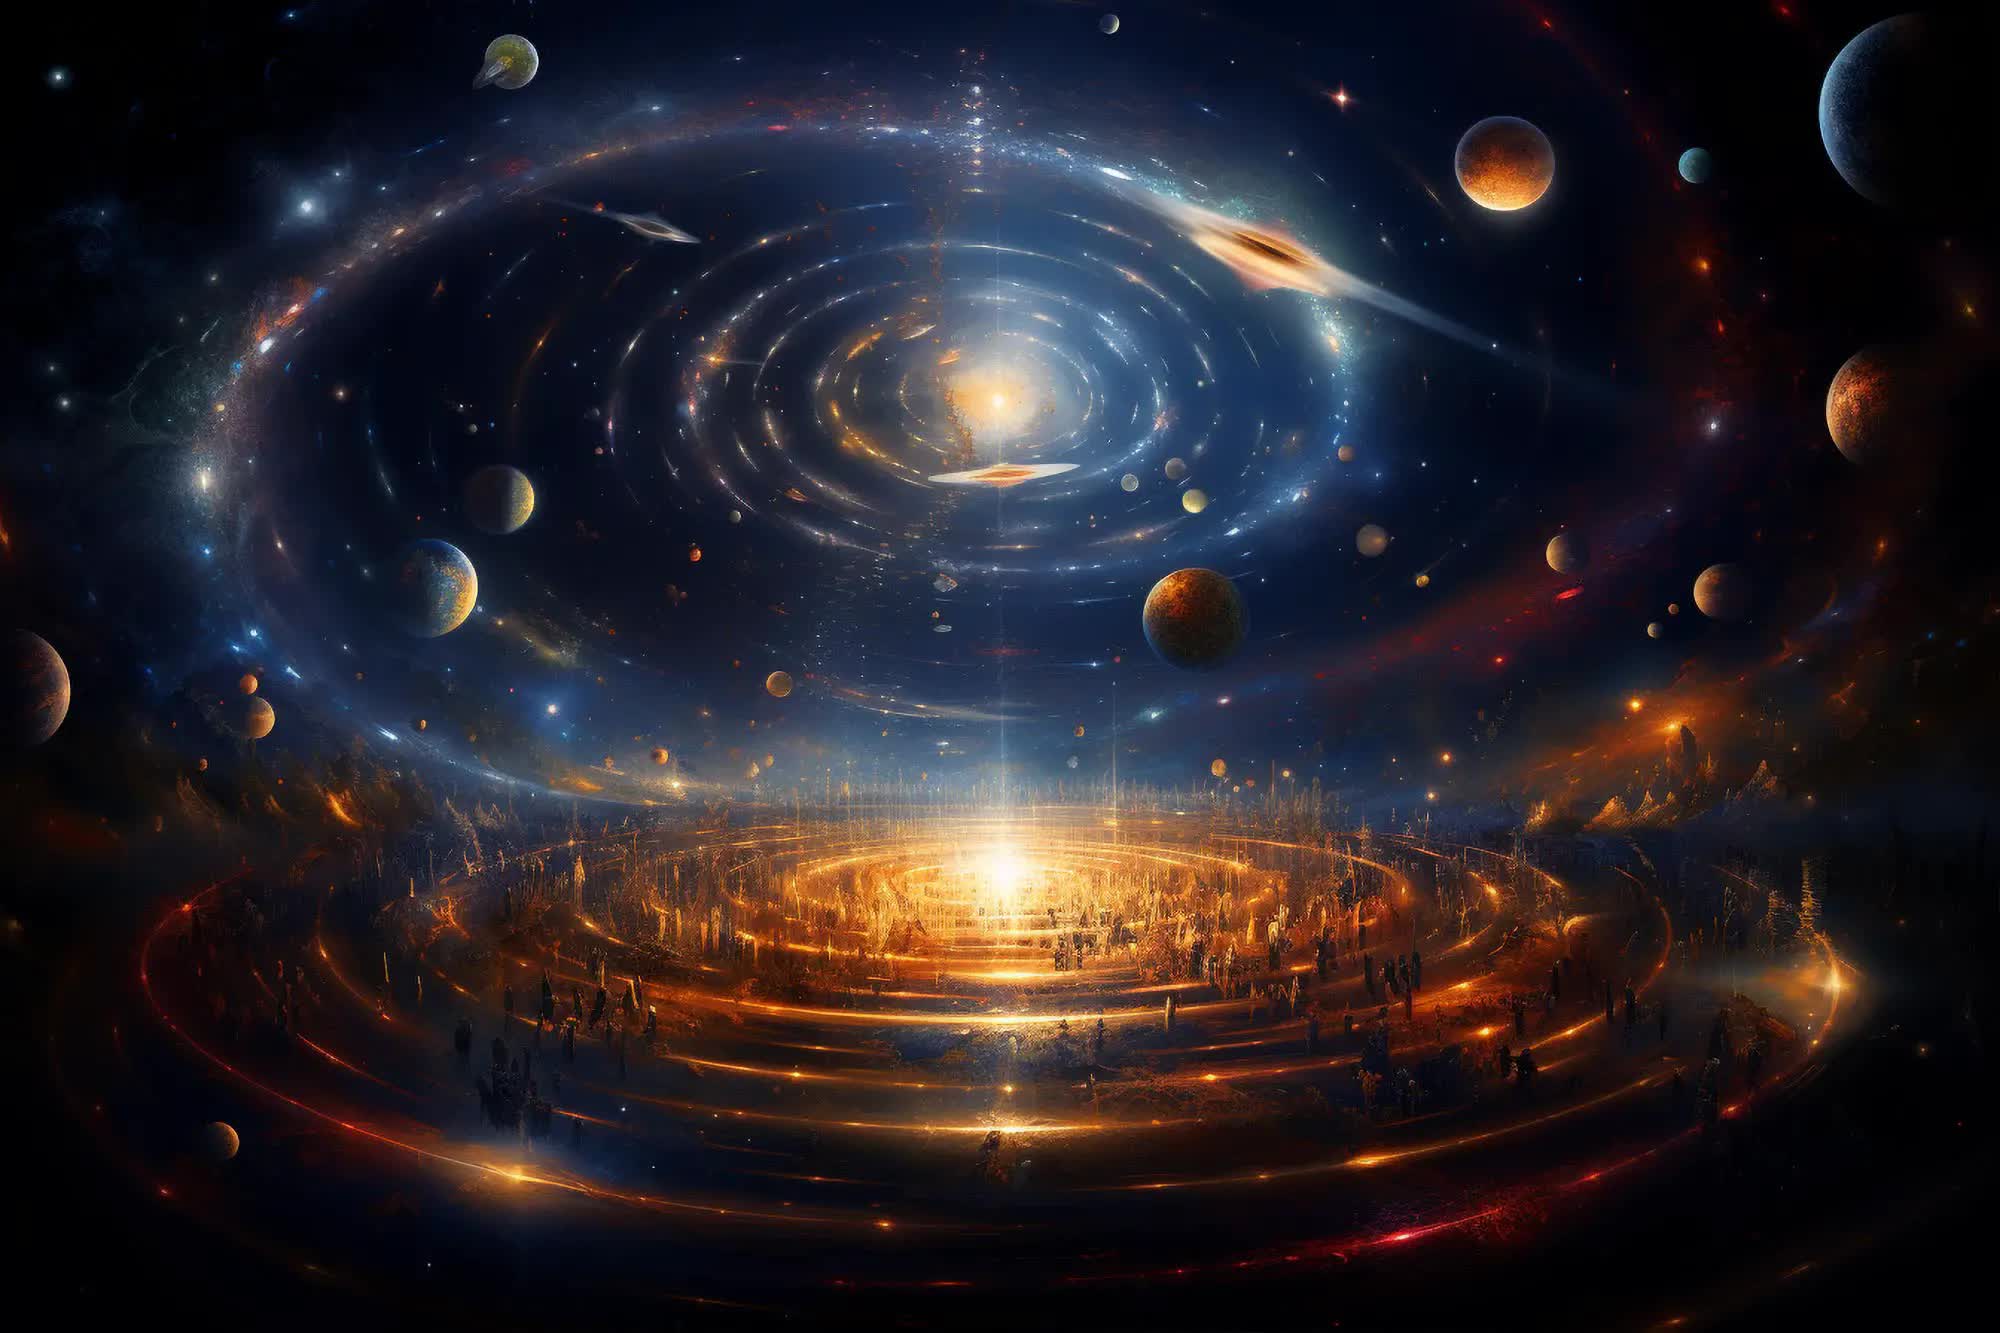 Tuổi của vũ trụ là khoảng 13,8 tỷ năm nhưng tại sao chúng ta lại có thể quan sát được 93 tỷ năm ánh sáng?- Ảnh 6.